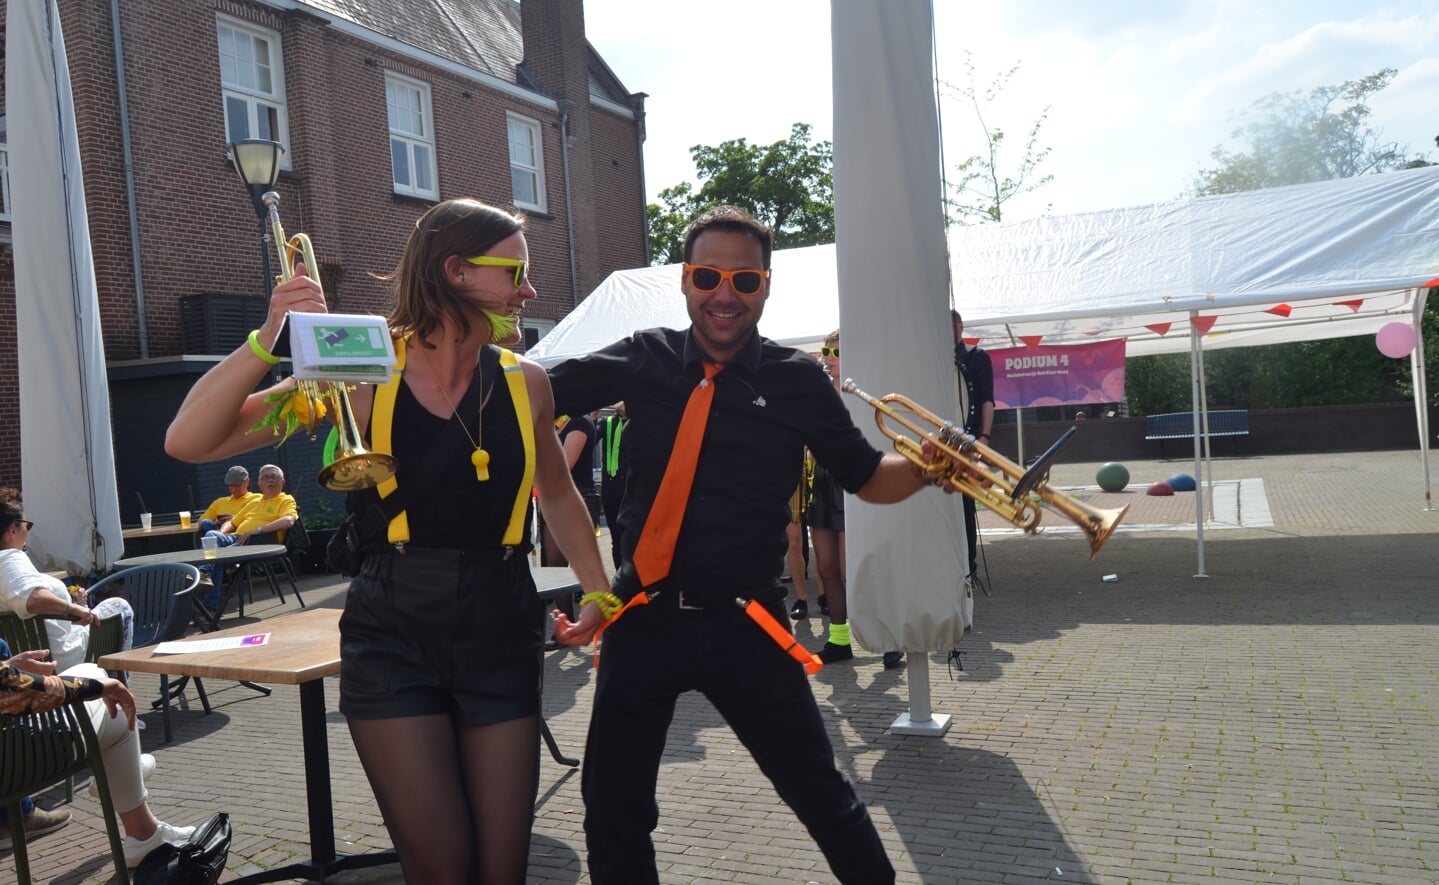 Muziek, entertainment en activiteiten voor de kinderen. Er was zondag van alles te zien en te horen in het centrum van Boxtel tijdens het Muziekstraatje.